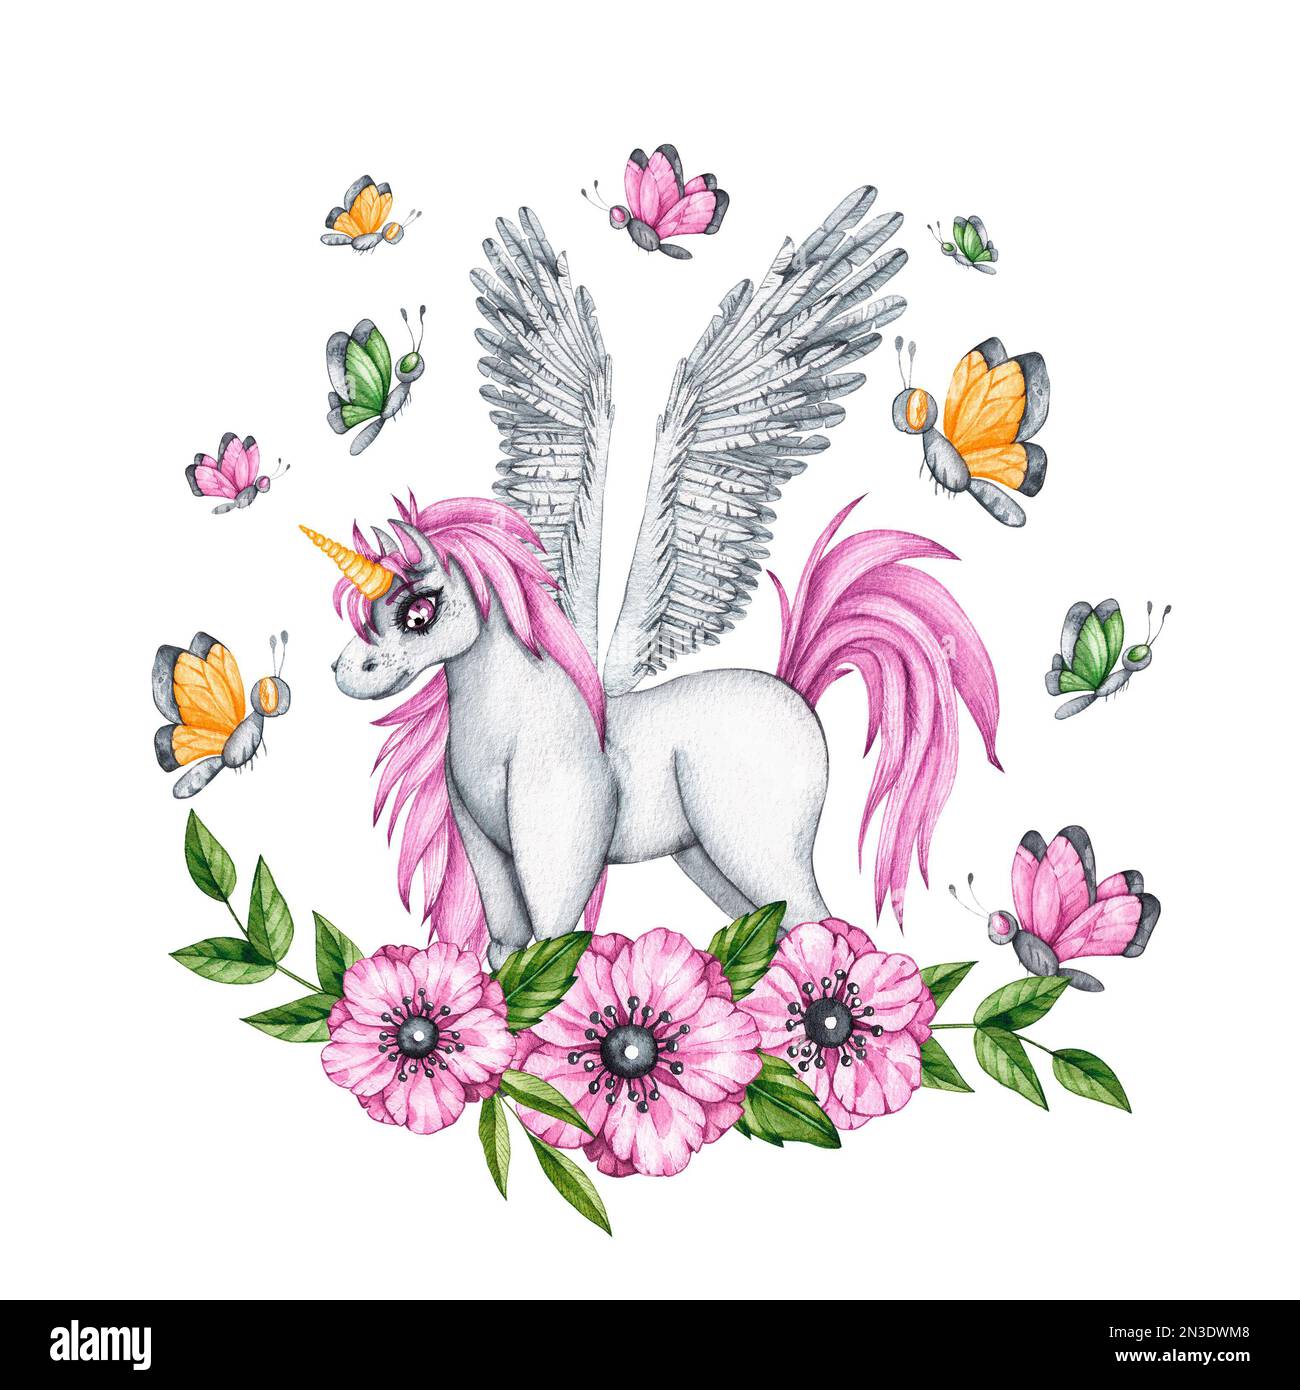 licorne aquarelle avec fleurs et papillons sur fond blanc pour la conception de produits pour enfants. Pegasus avec cheveux roses pour cartes, tissus Banque D'Images